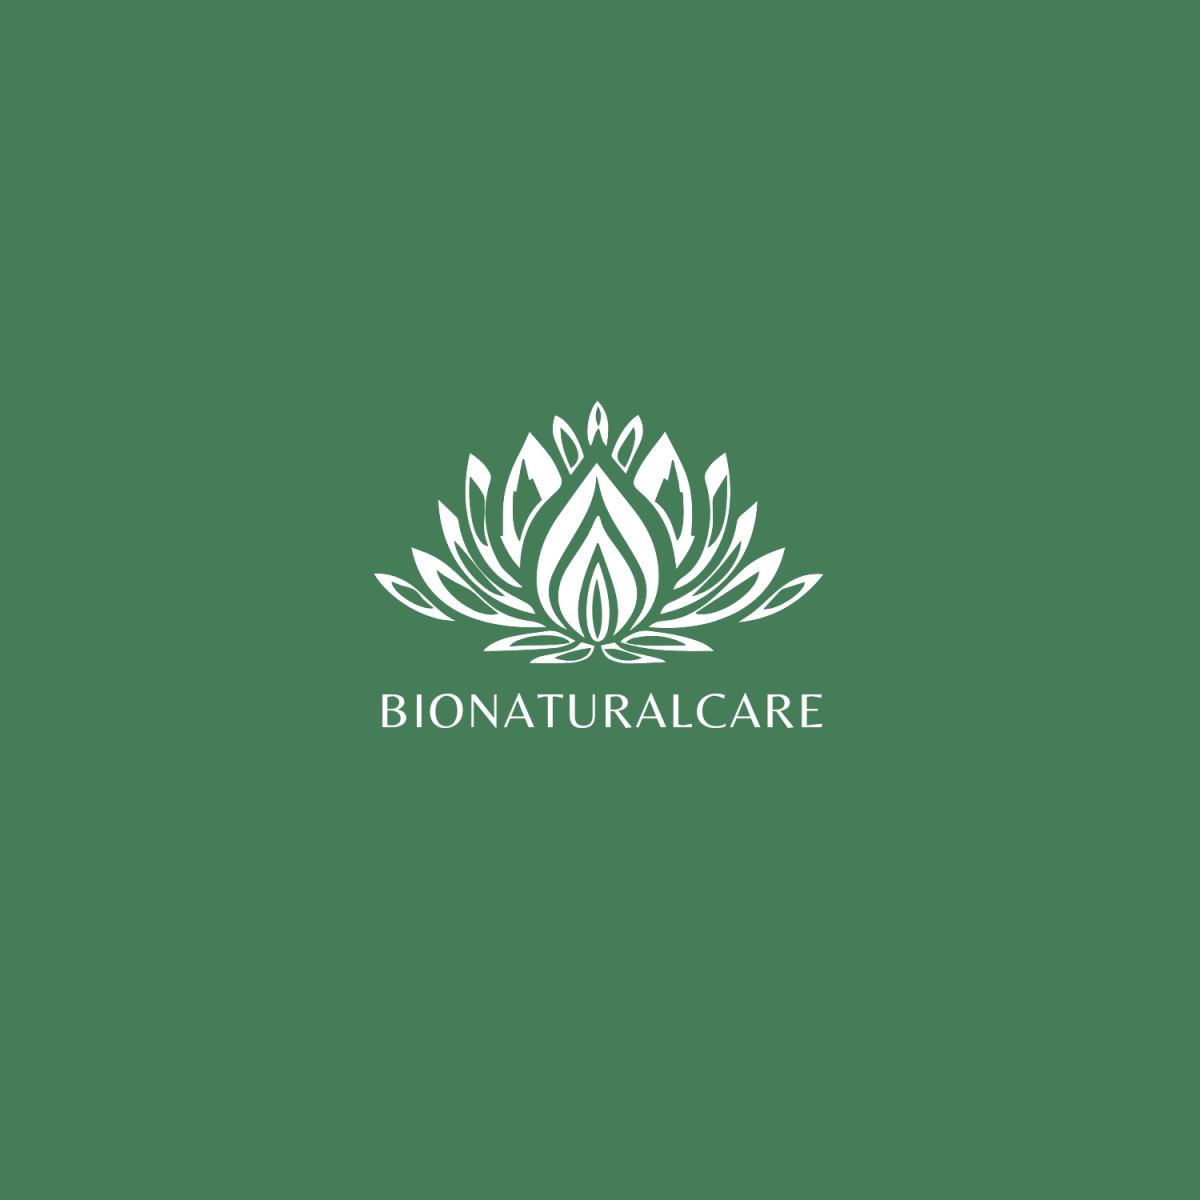 Bionaturalcare